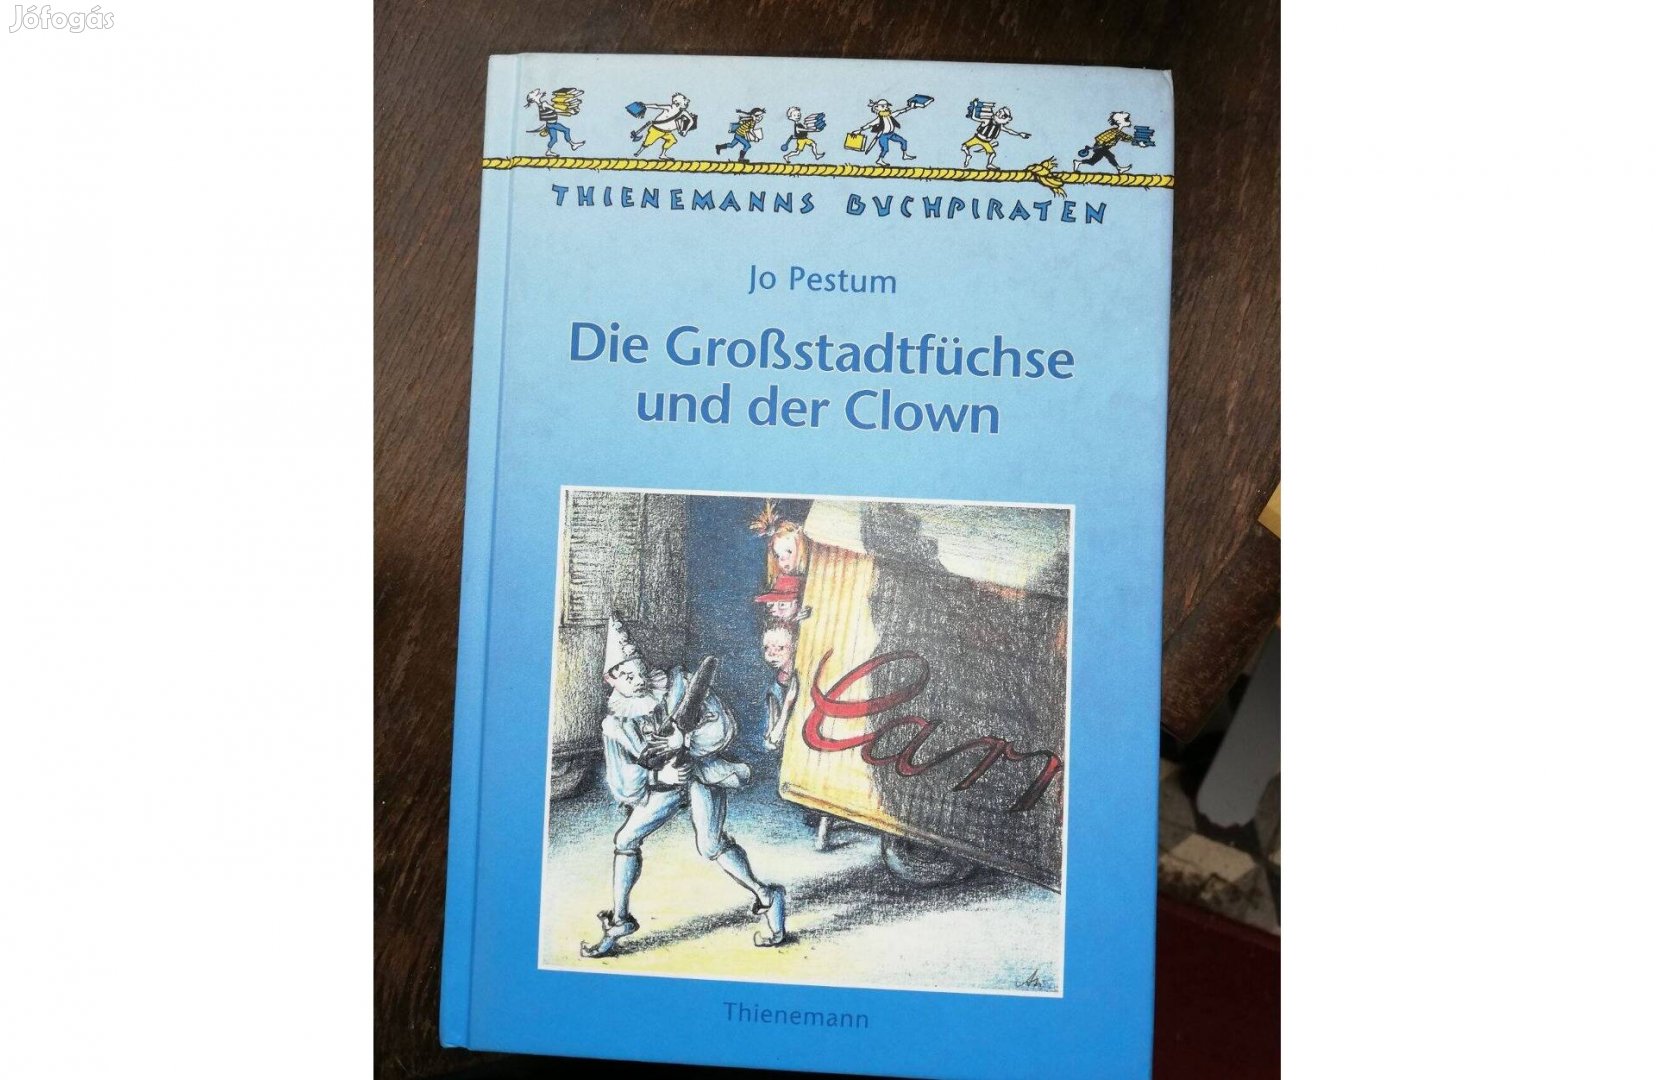 Thienemanns -Die Grobstadtfuchse Und Der Clow német